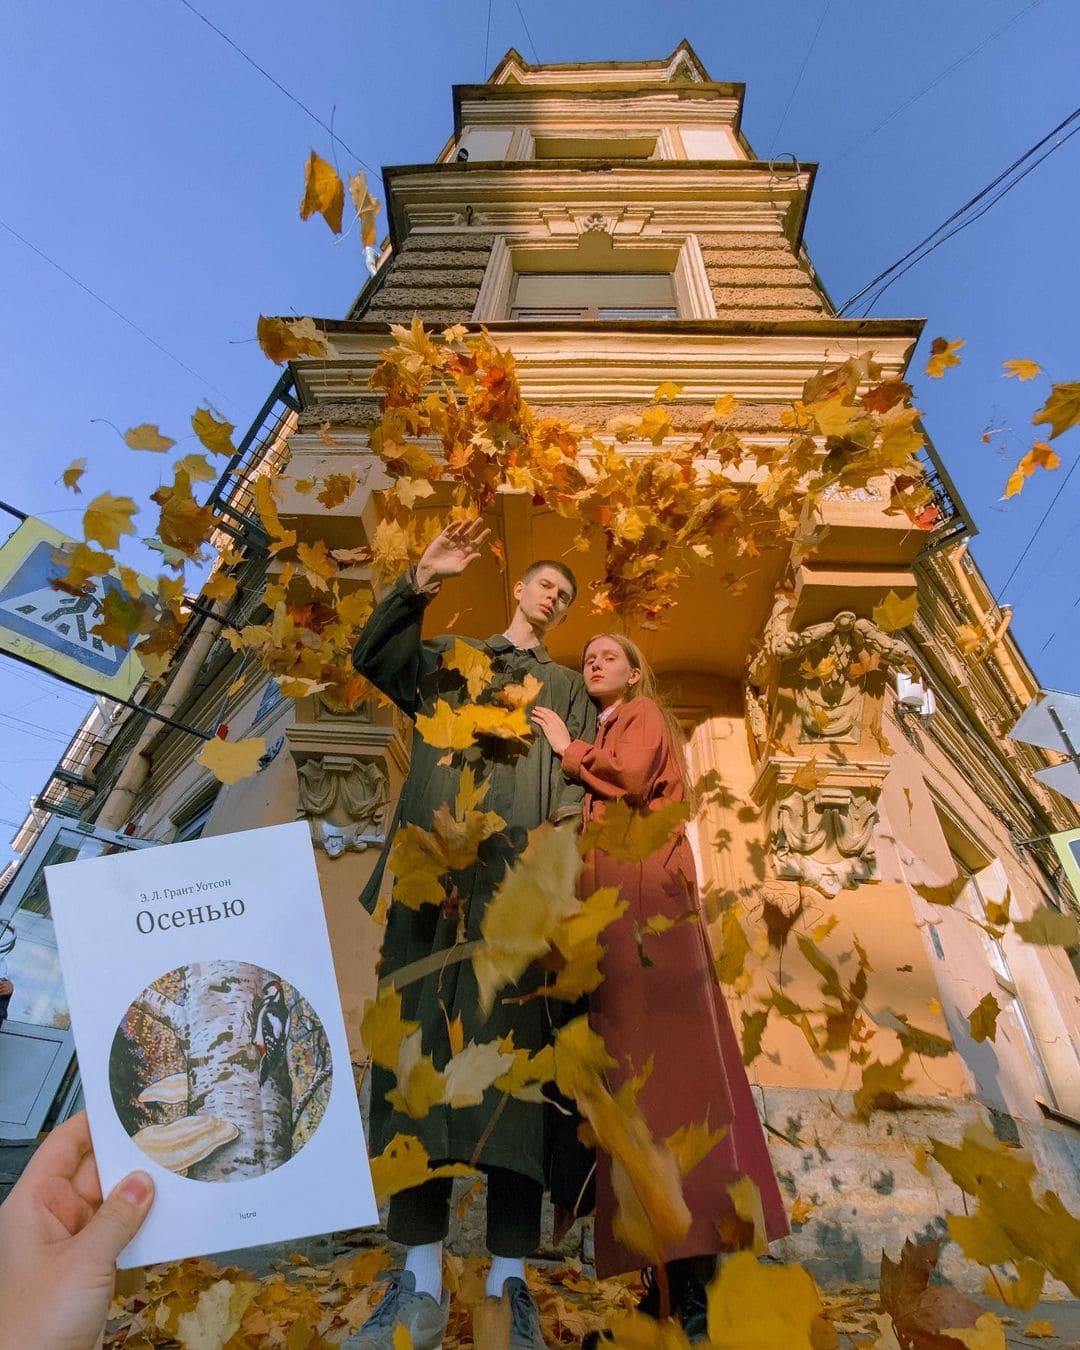 Петербургский книжный магазин разворачивает сюжеты книг в реальном мире, устраивая эстетичные фотосессии 68